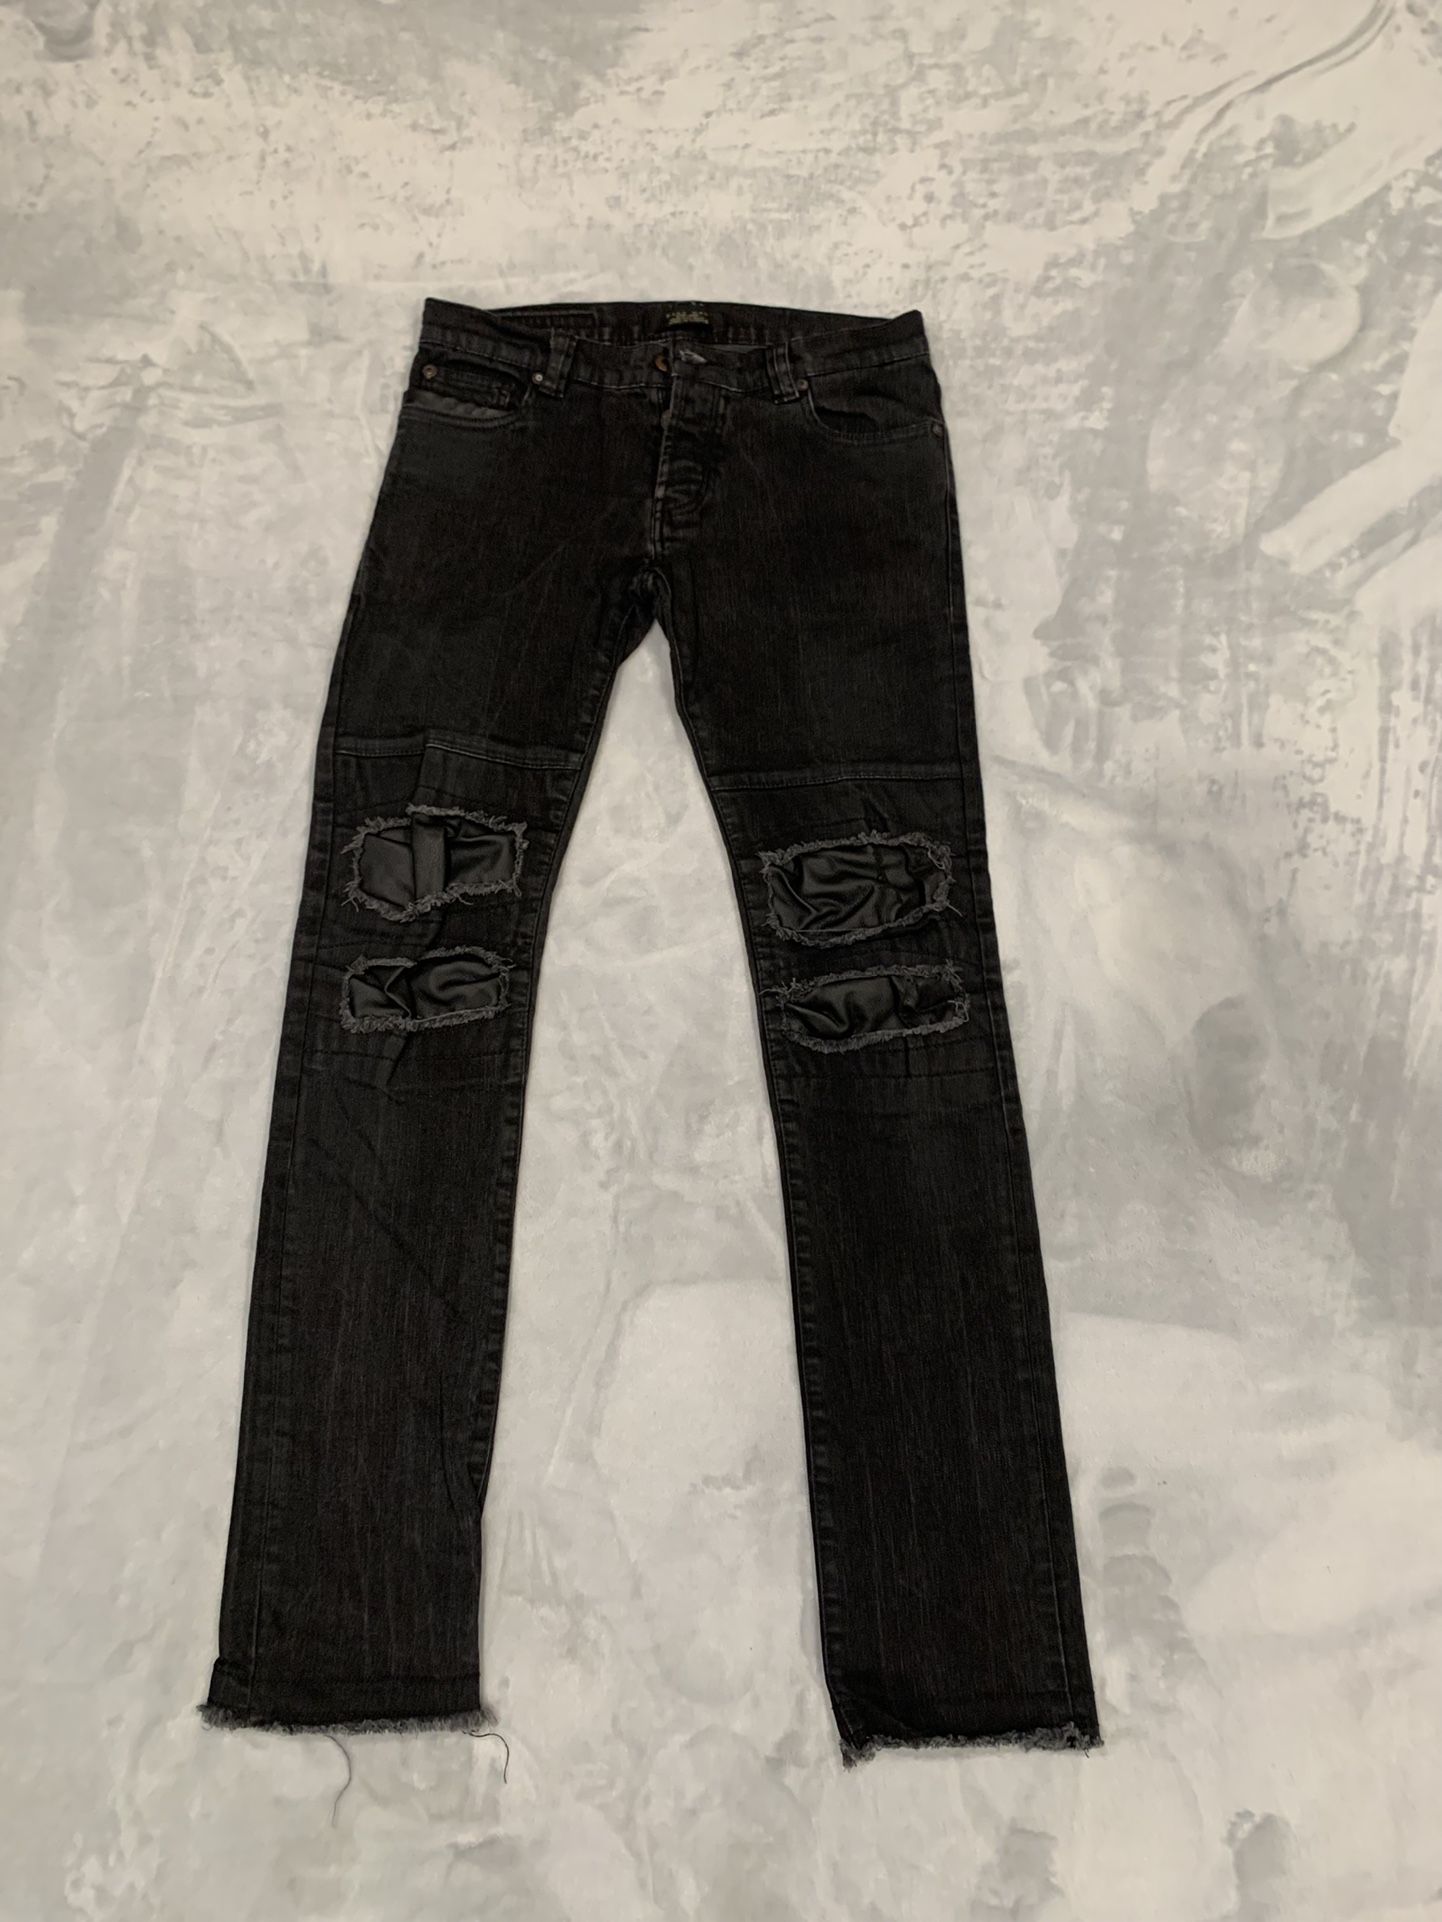 Zara Man , Sport Moda Jeans 👖 Size 31 